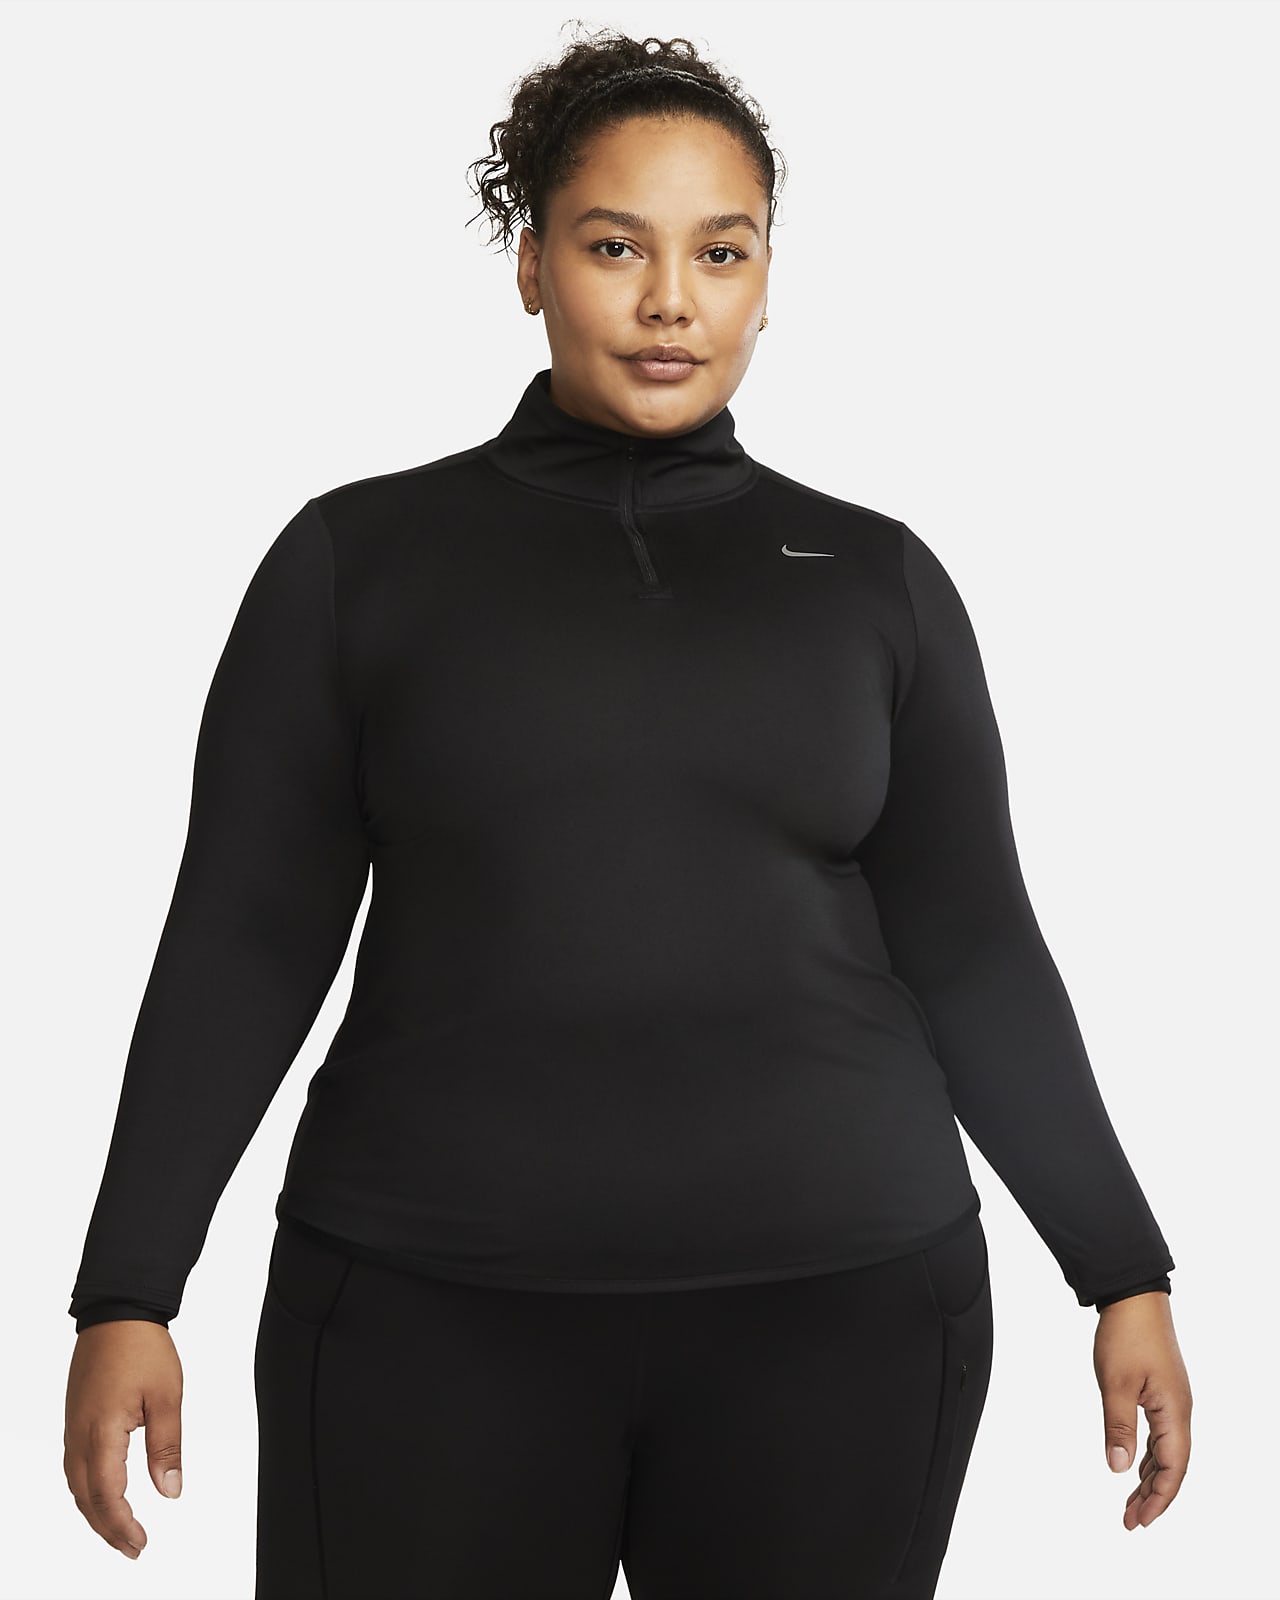 Damska koszulka do biegania z zamkiem 1/4 Nike Dri-FIT Swift UV (duże rozmiary)